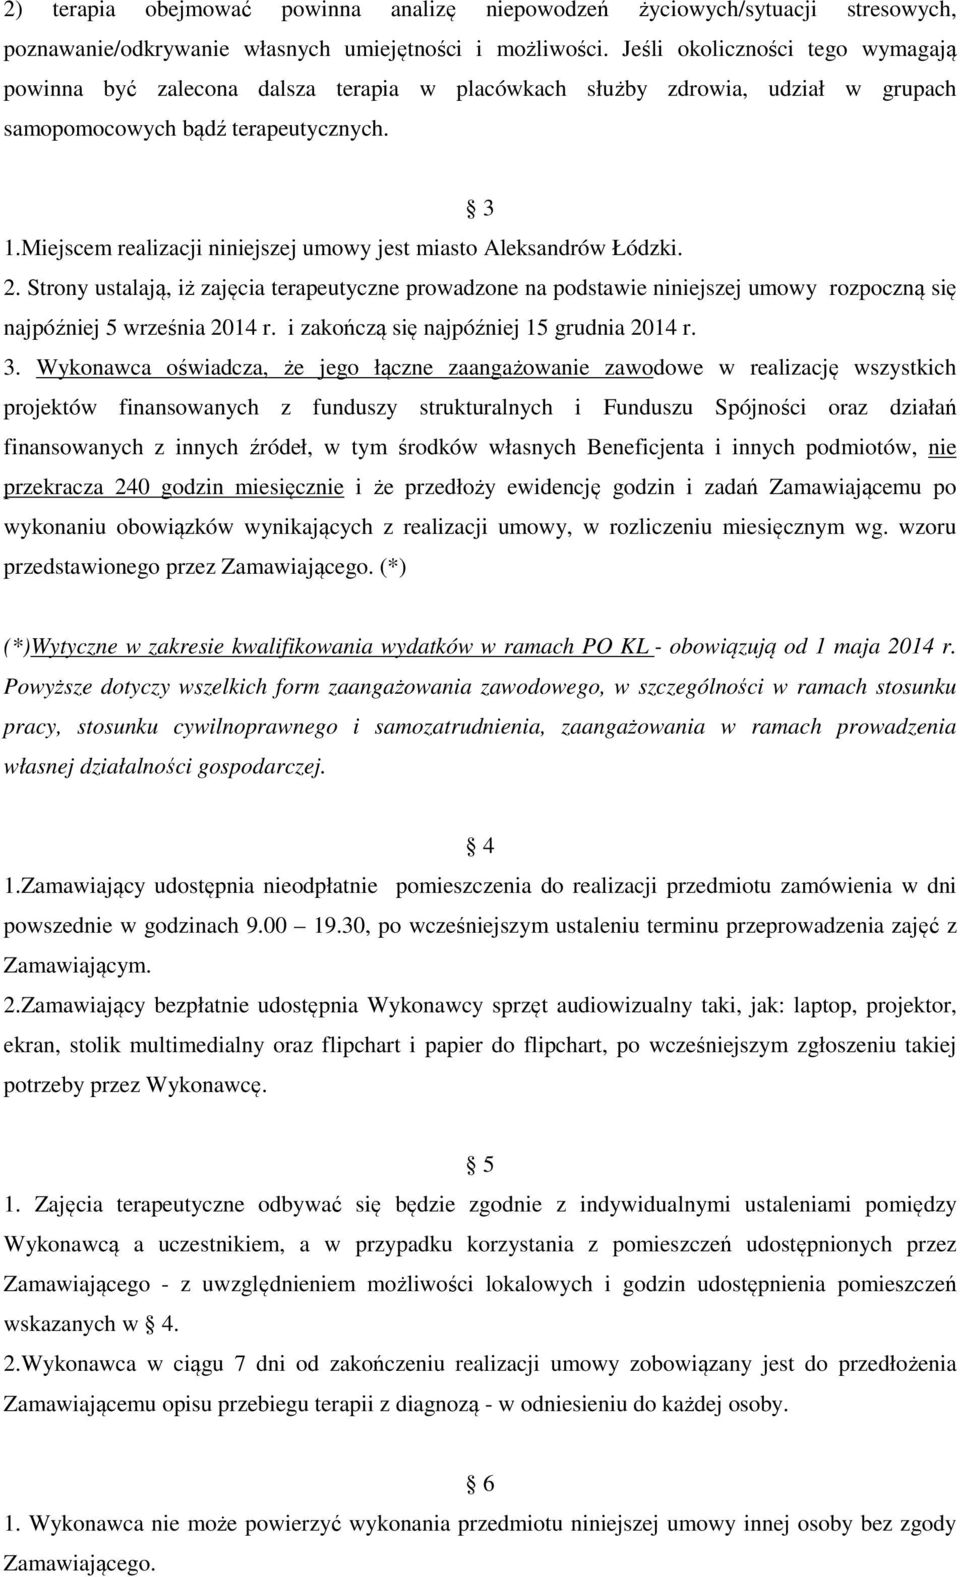 Miejscem realizacji niniejszej umowy jest miasto Aleksandrów Łódzki. 2. Strony ustalają, iż zajęcia terapeutyczne prowadzone na podstawie niniejszej umowy rozpoczną się najpóźniej 5 września 2014 r.